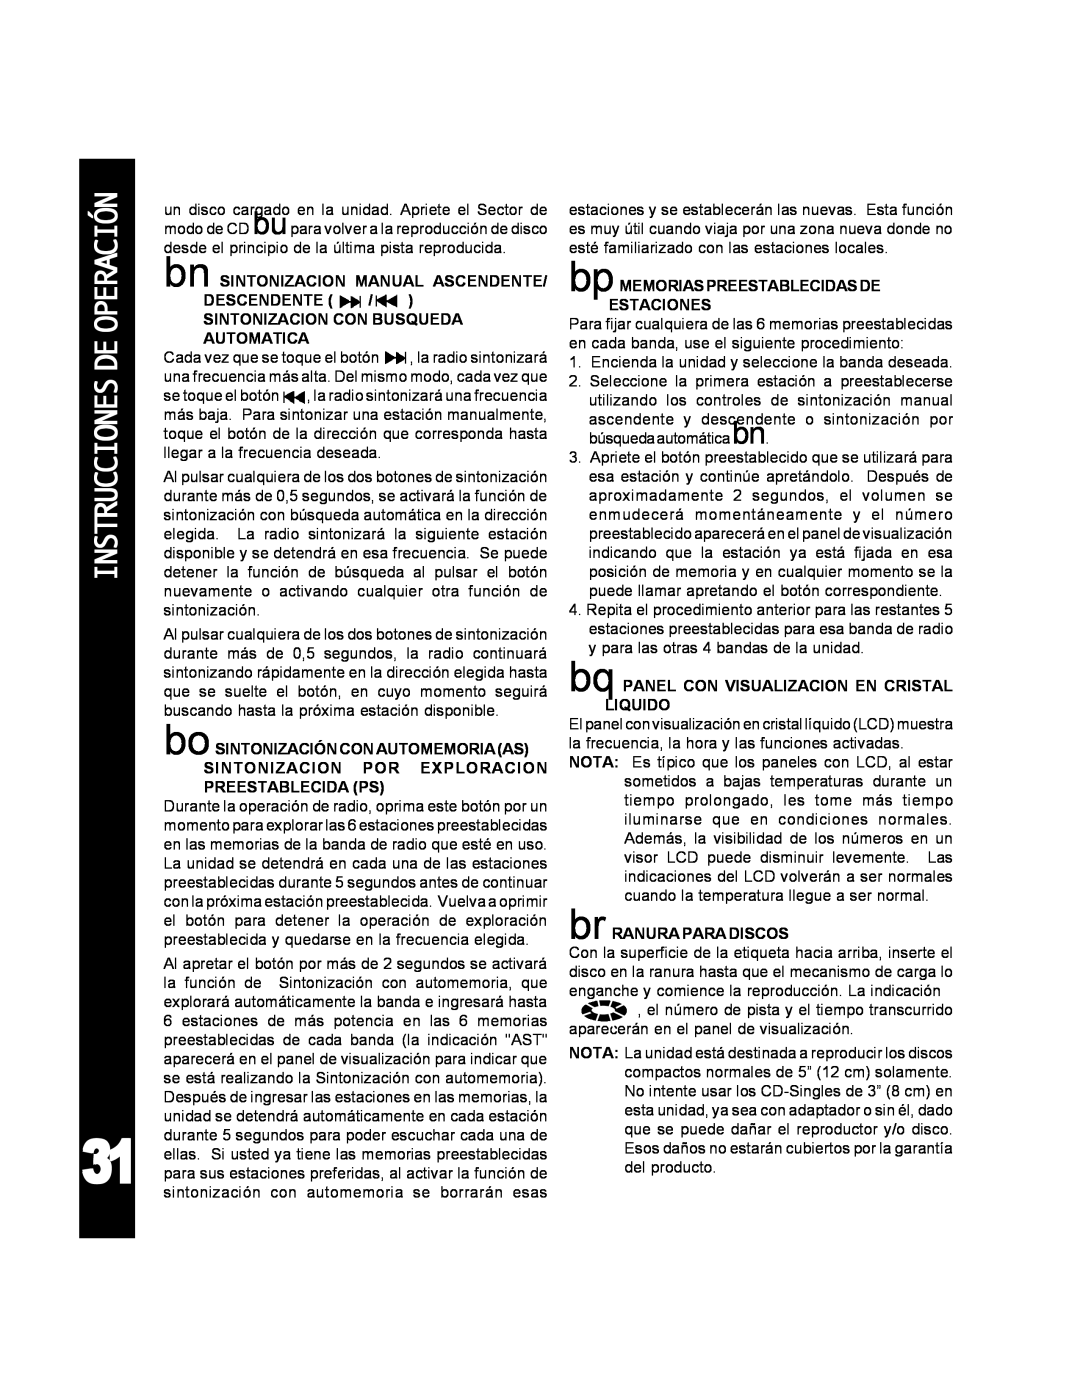 Audiovox ACD-25 manual Instruccionesdeoperación, bn SINTONIZACION MANUAL ASCENDENTE DESCENDENTE 